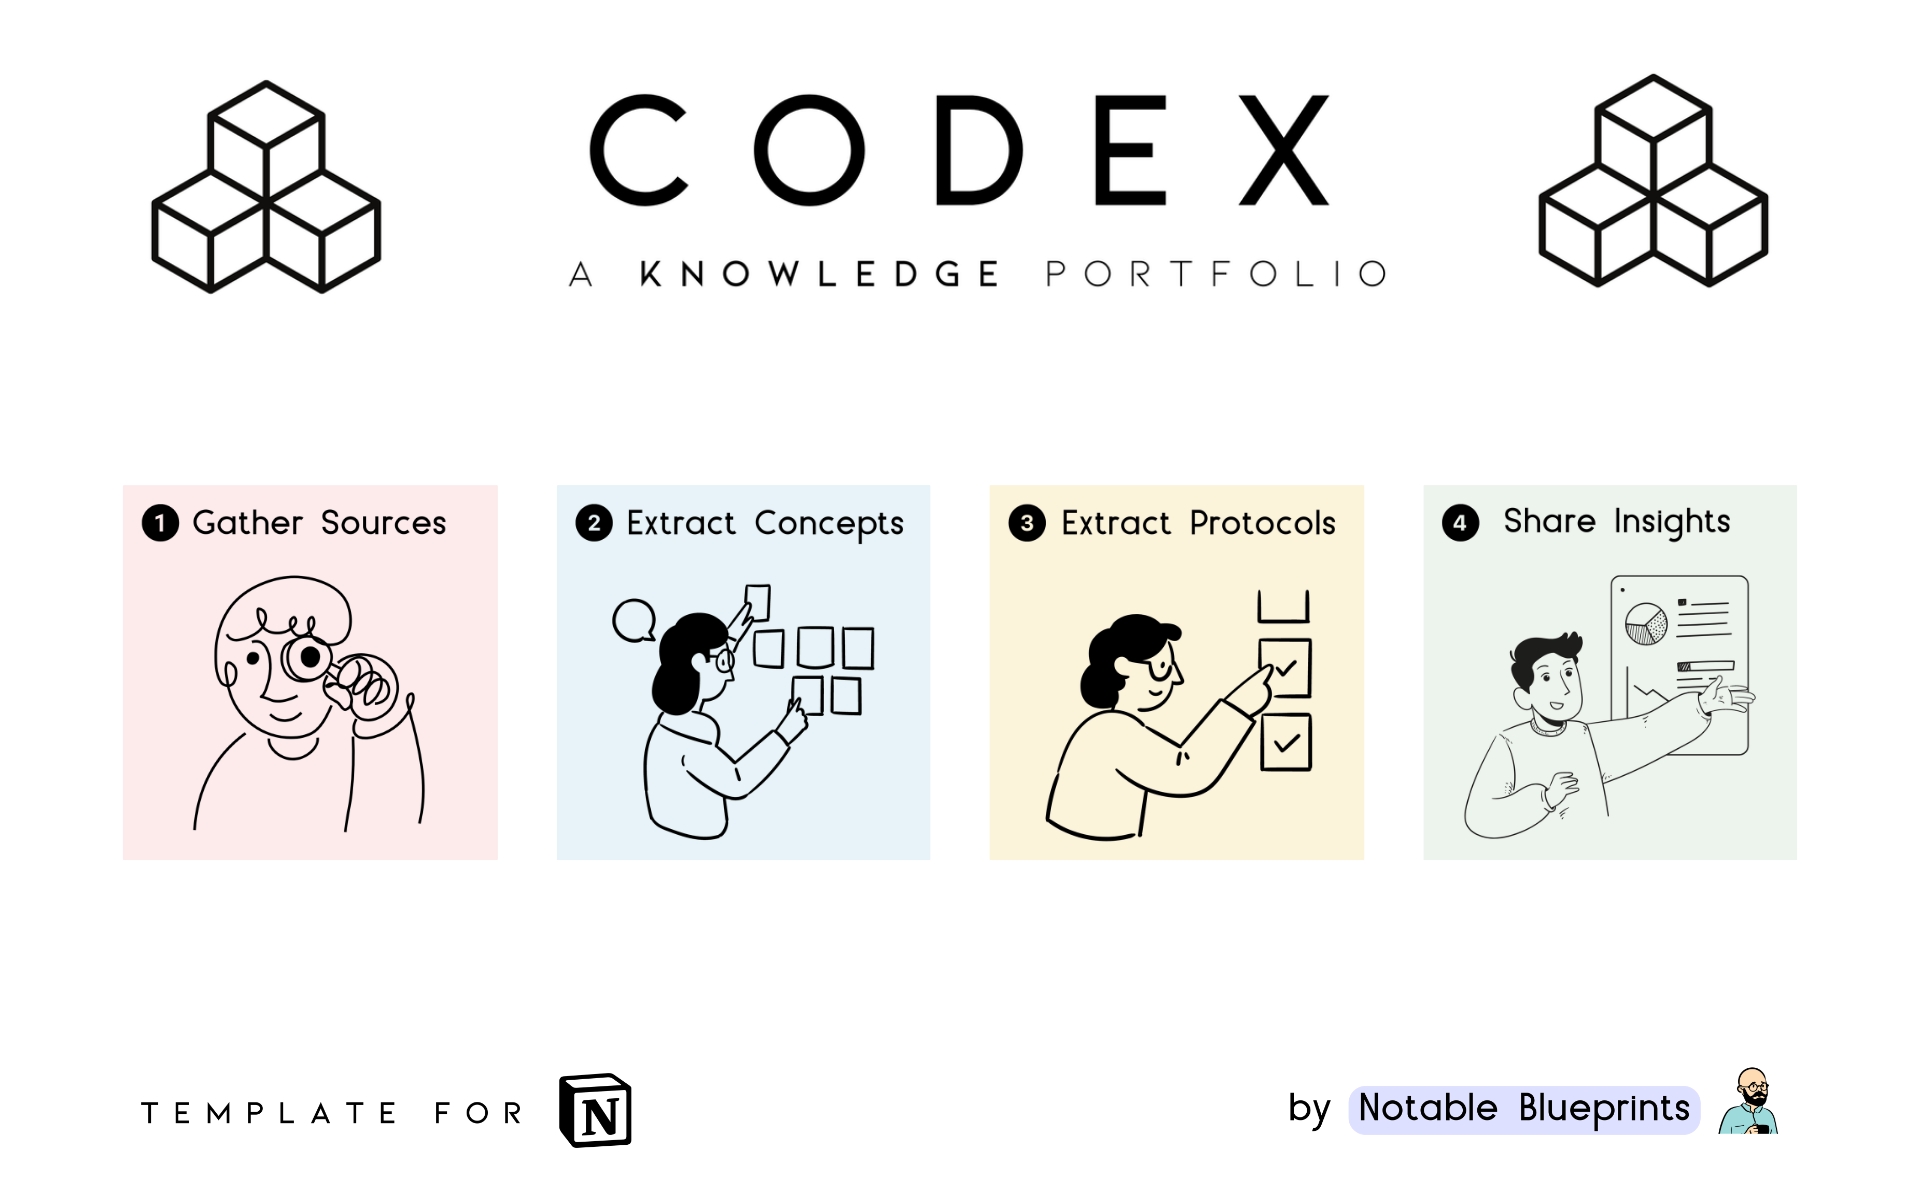 Vista previa de una plantilla para ⫷ CODEX ⫸ A Knowledge Portfolio